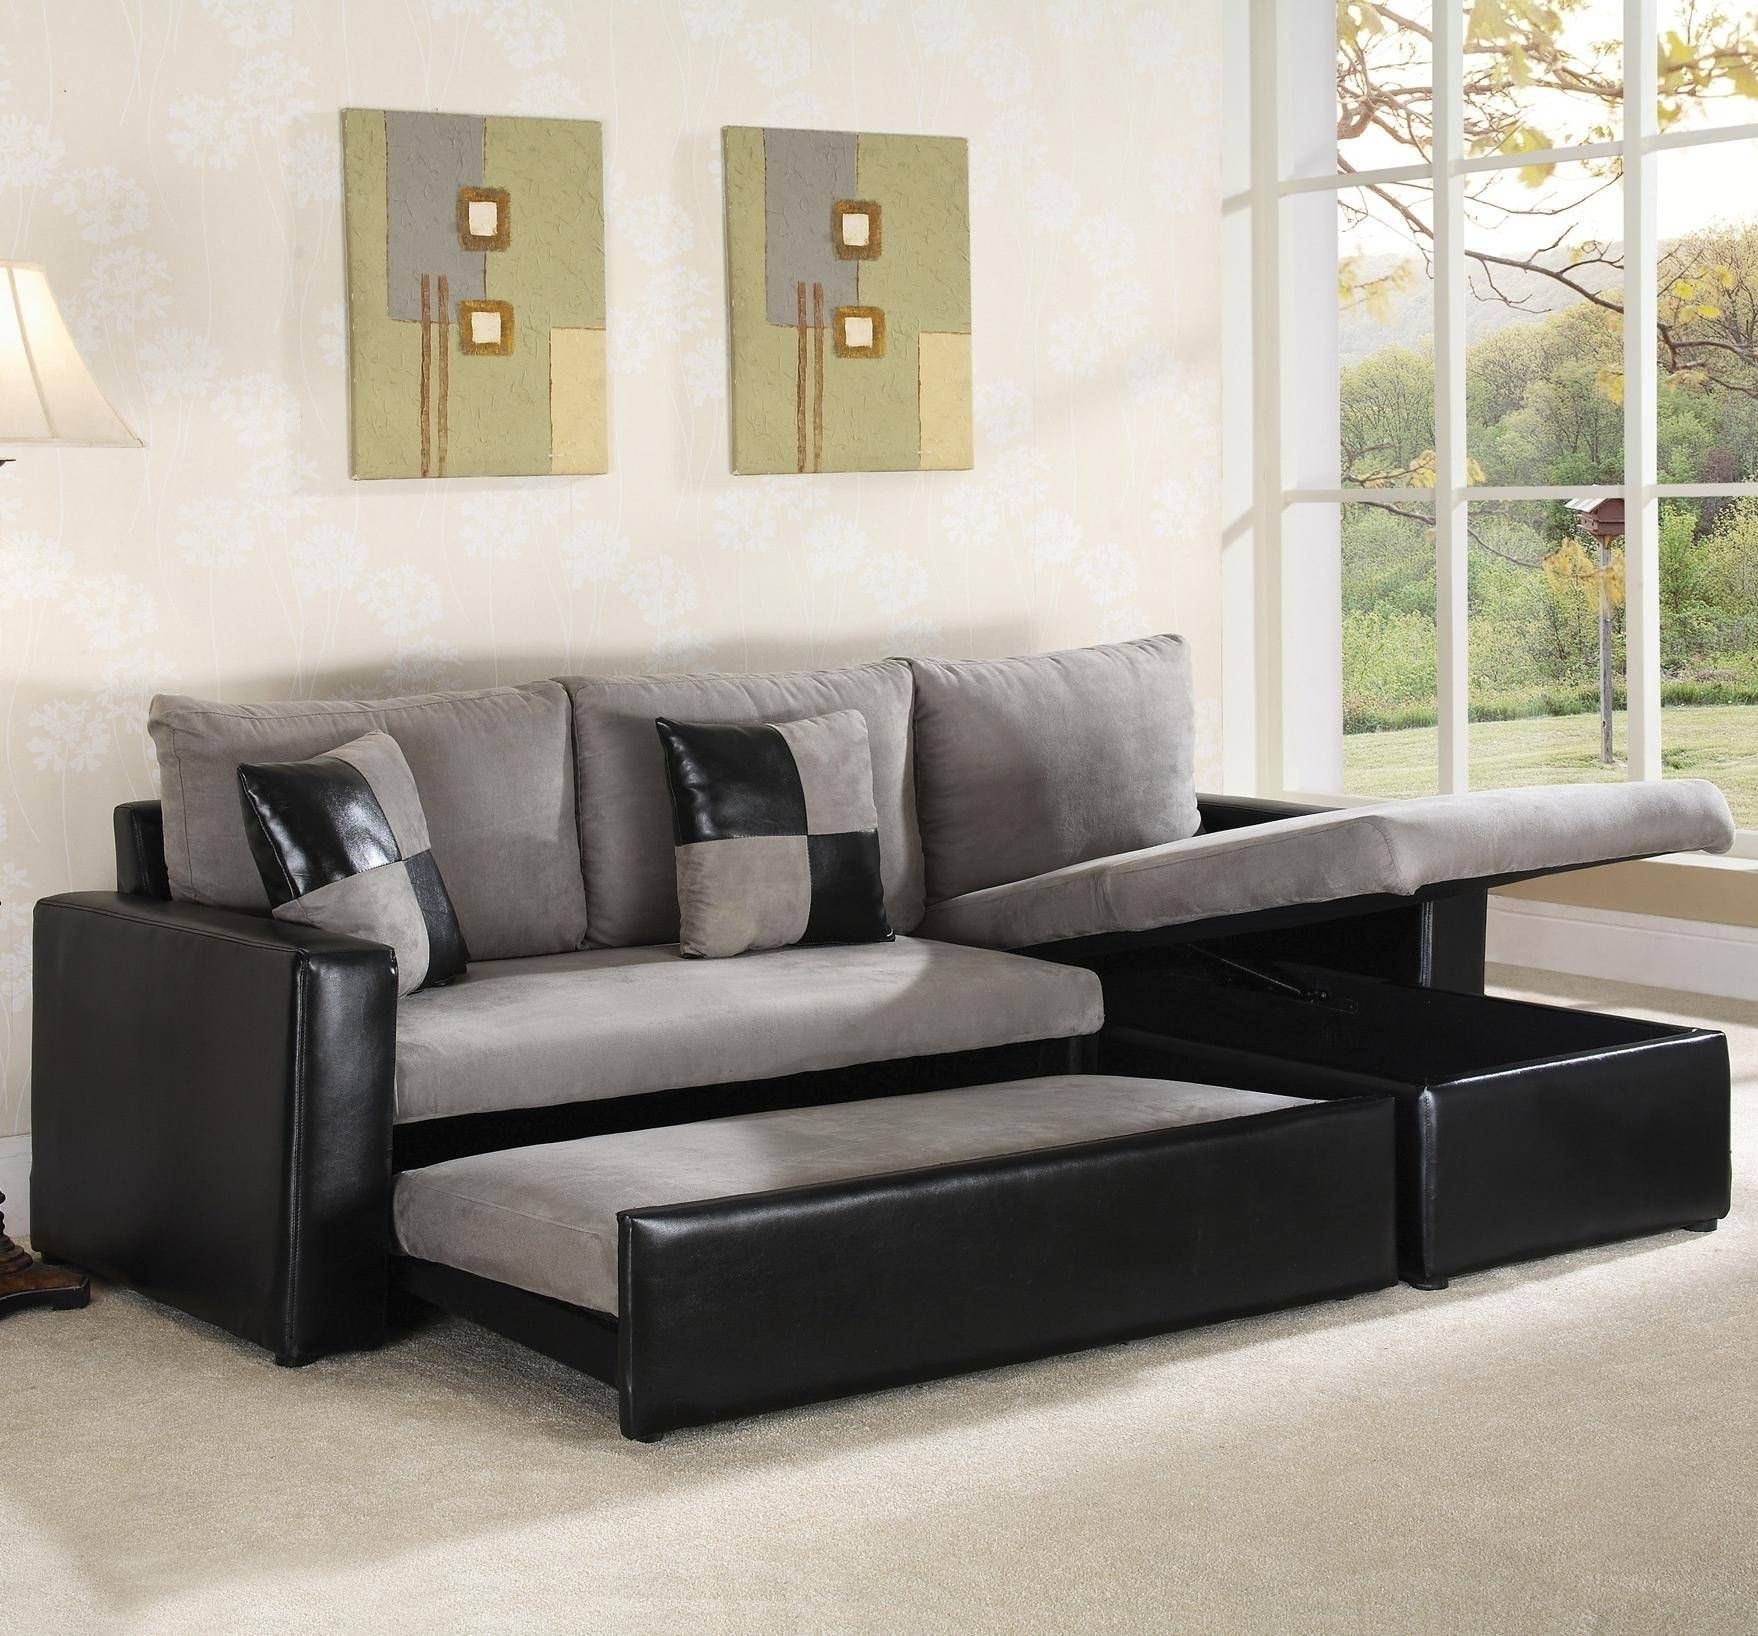 American Leather Sleeper Sofa Craigslist – Ansugallery For Craigslist Sleeper Sofa (View 7 of 30)